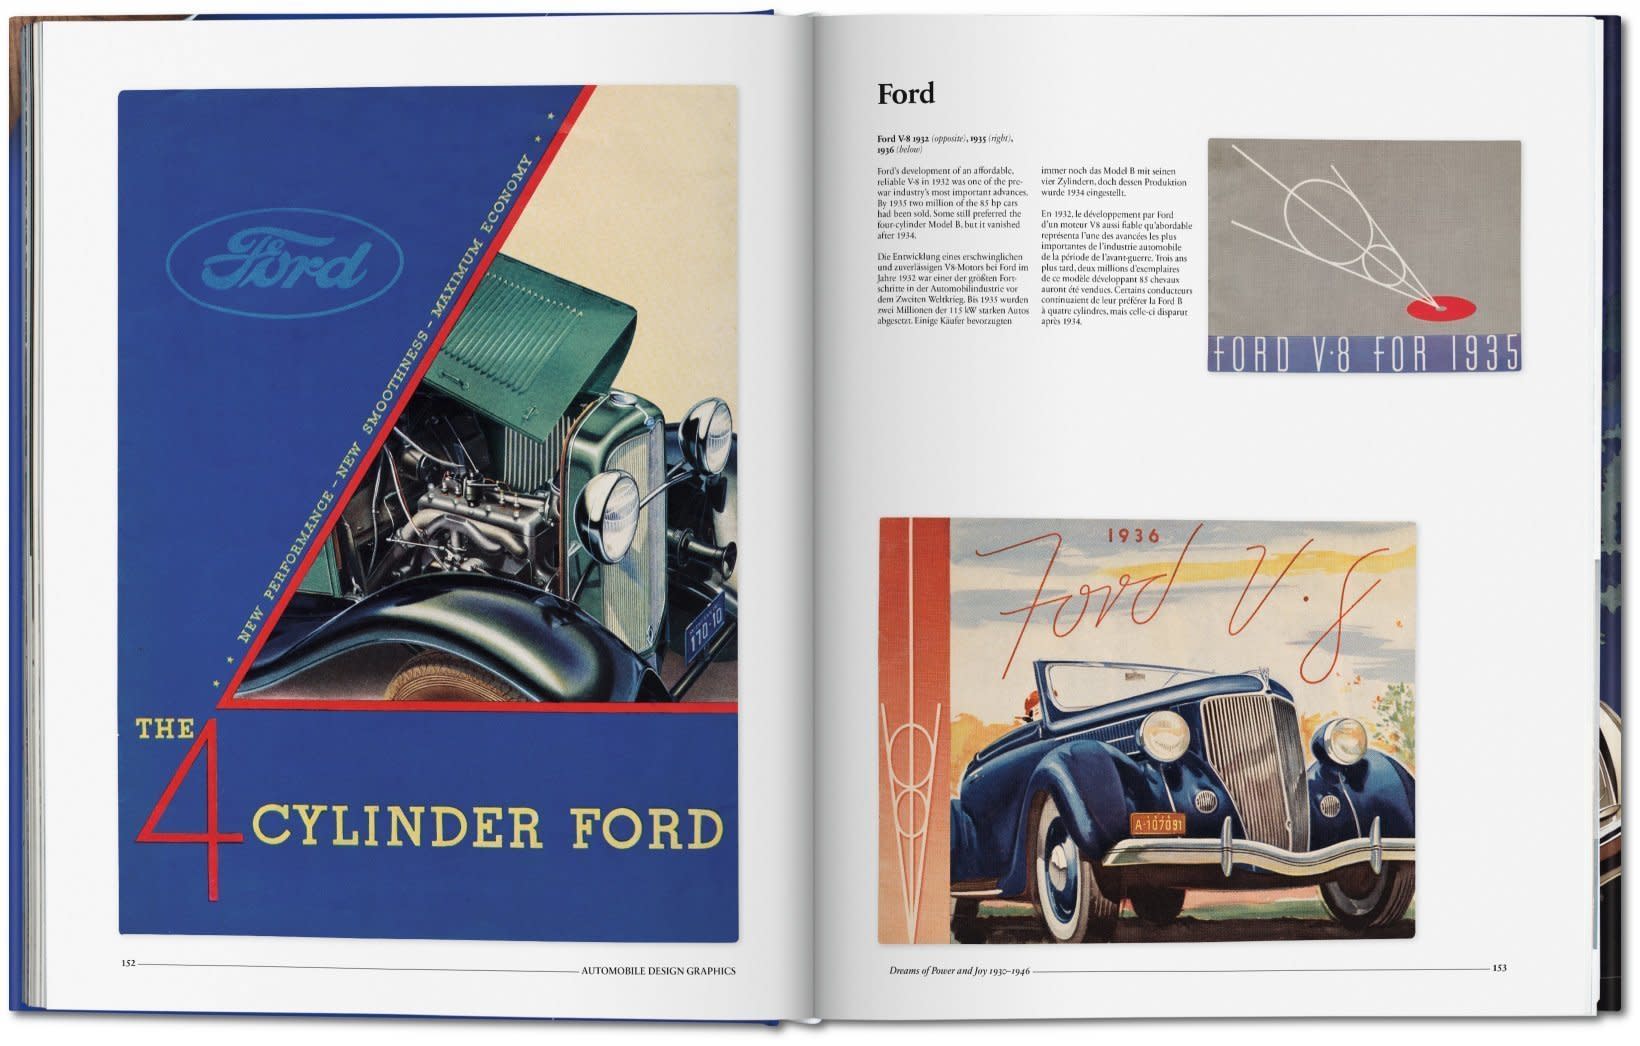 automobile_design_graphics_book